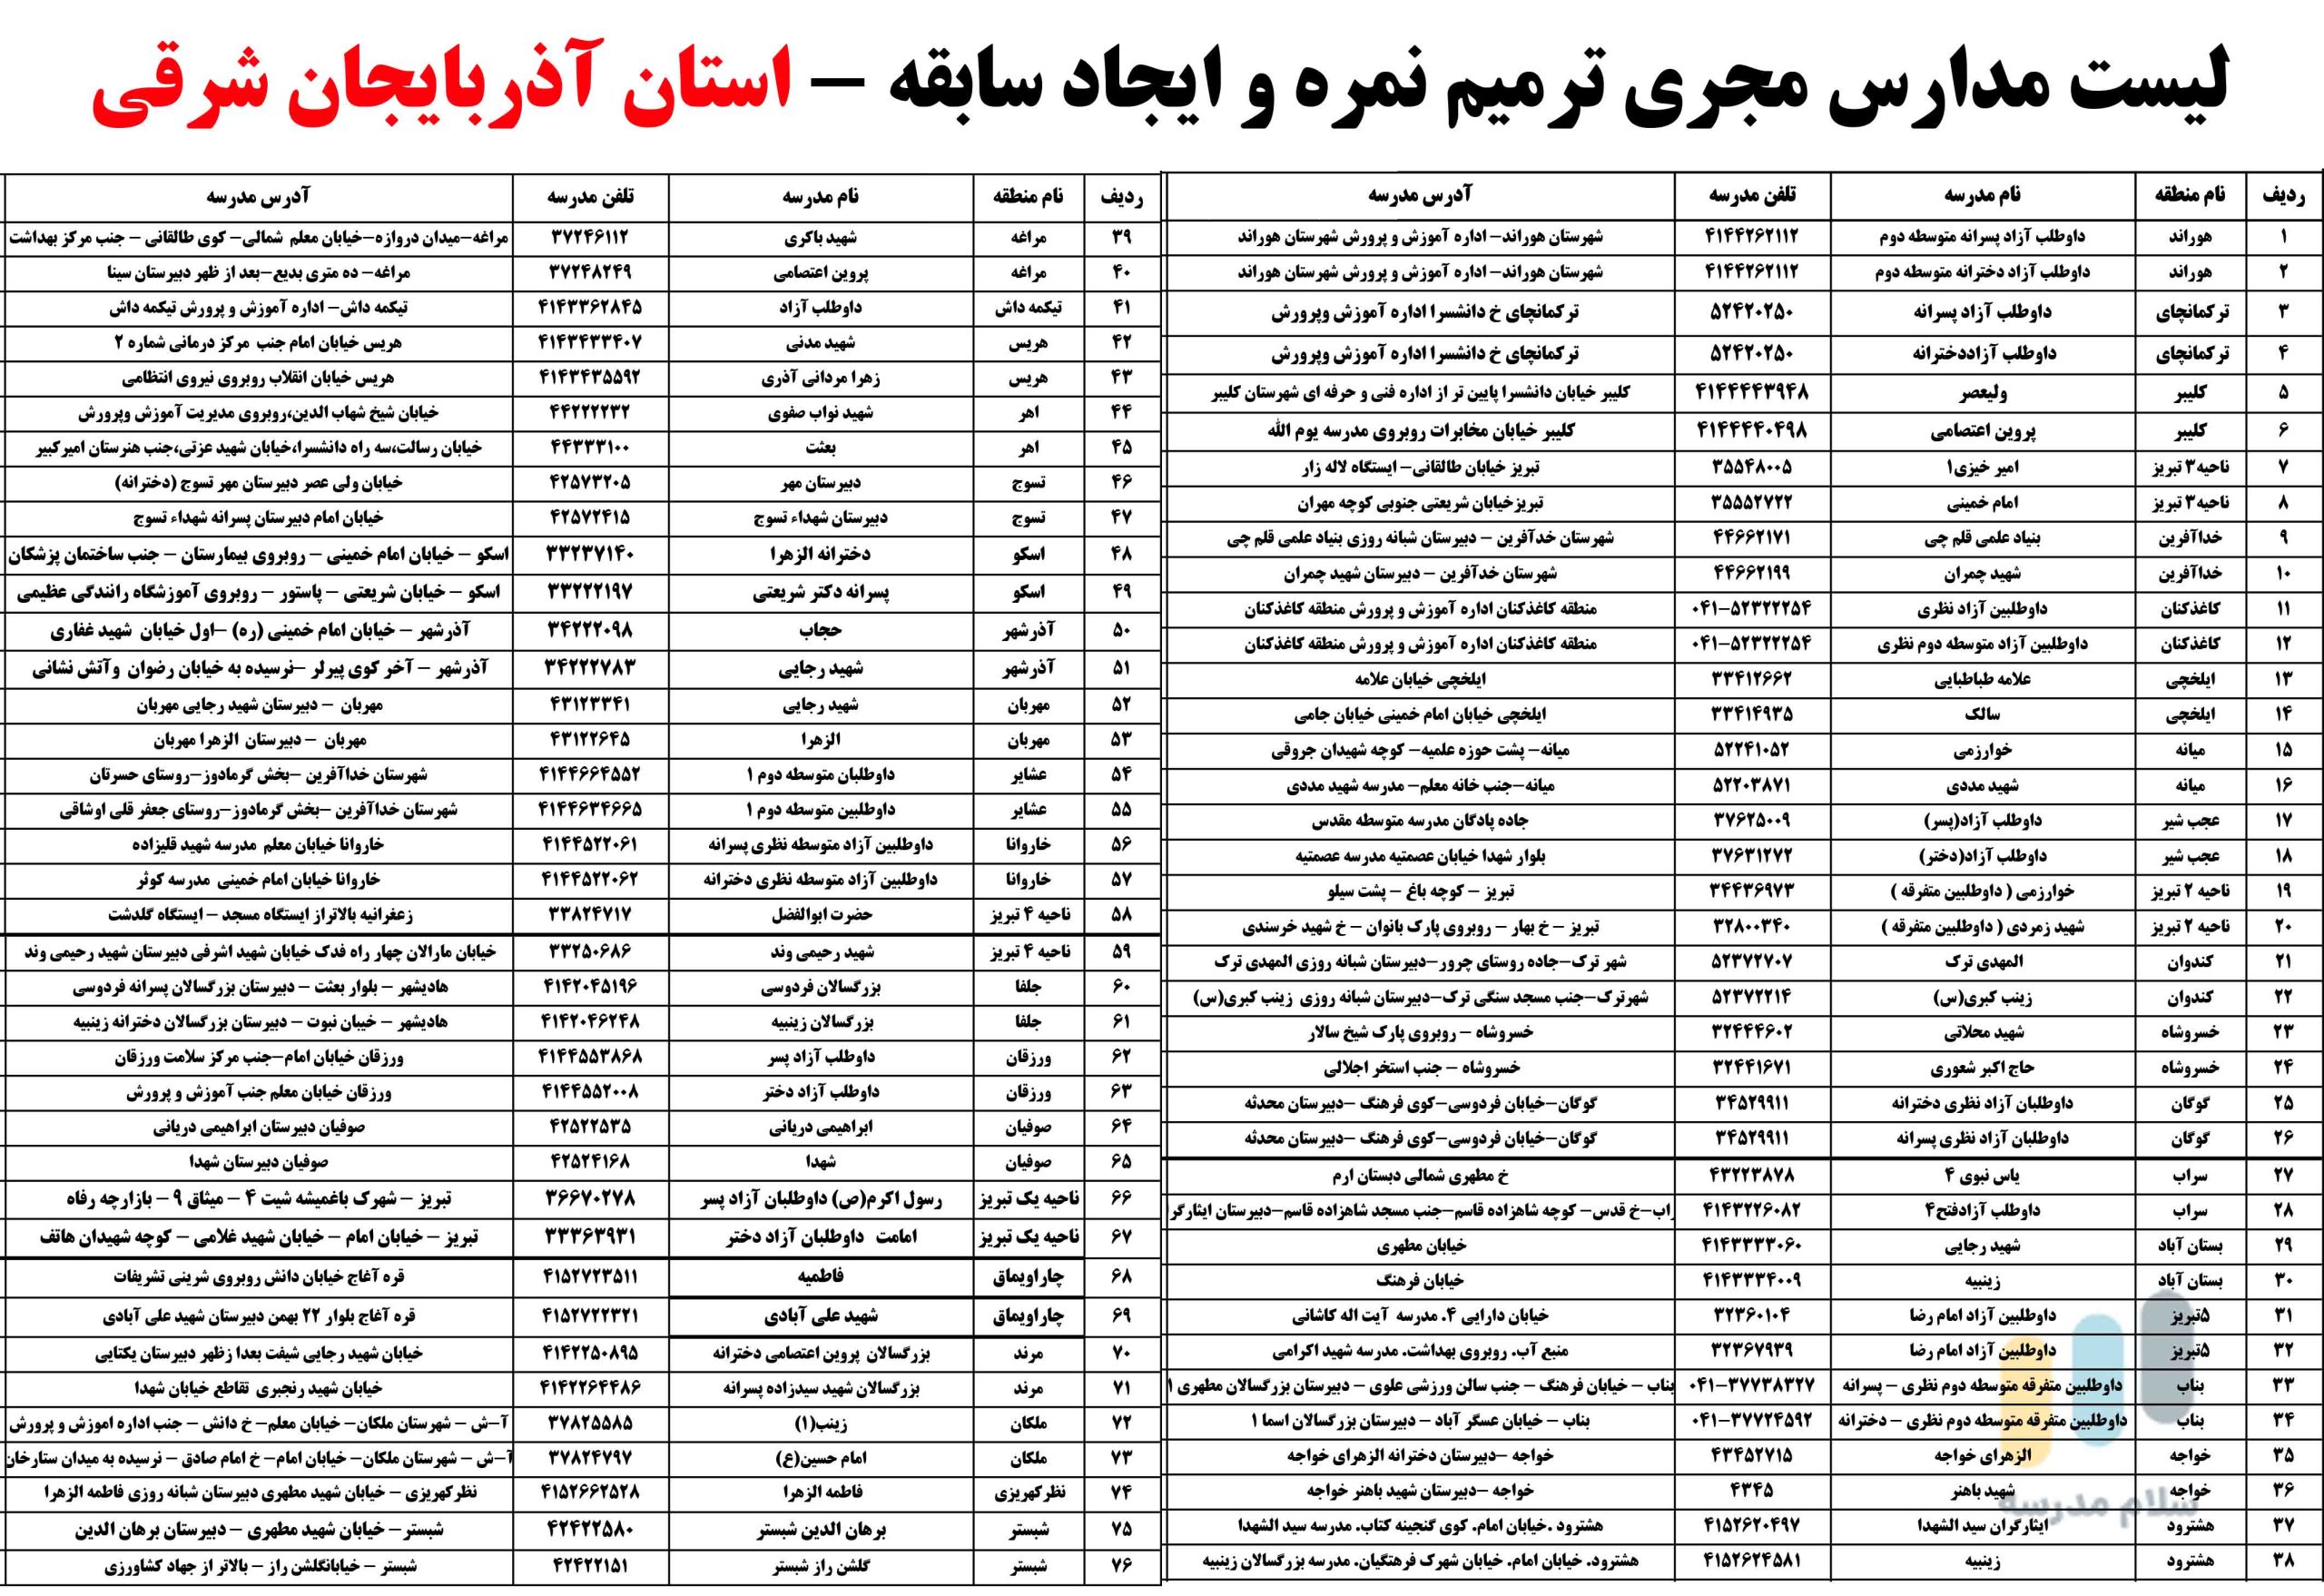 لیست مدارس بزرگسالان داوطلب آزاد مجری ثبت نام امتحان ترمیم نمره در استان آذربایجان شرقی